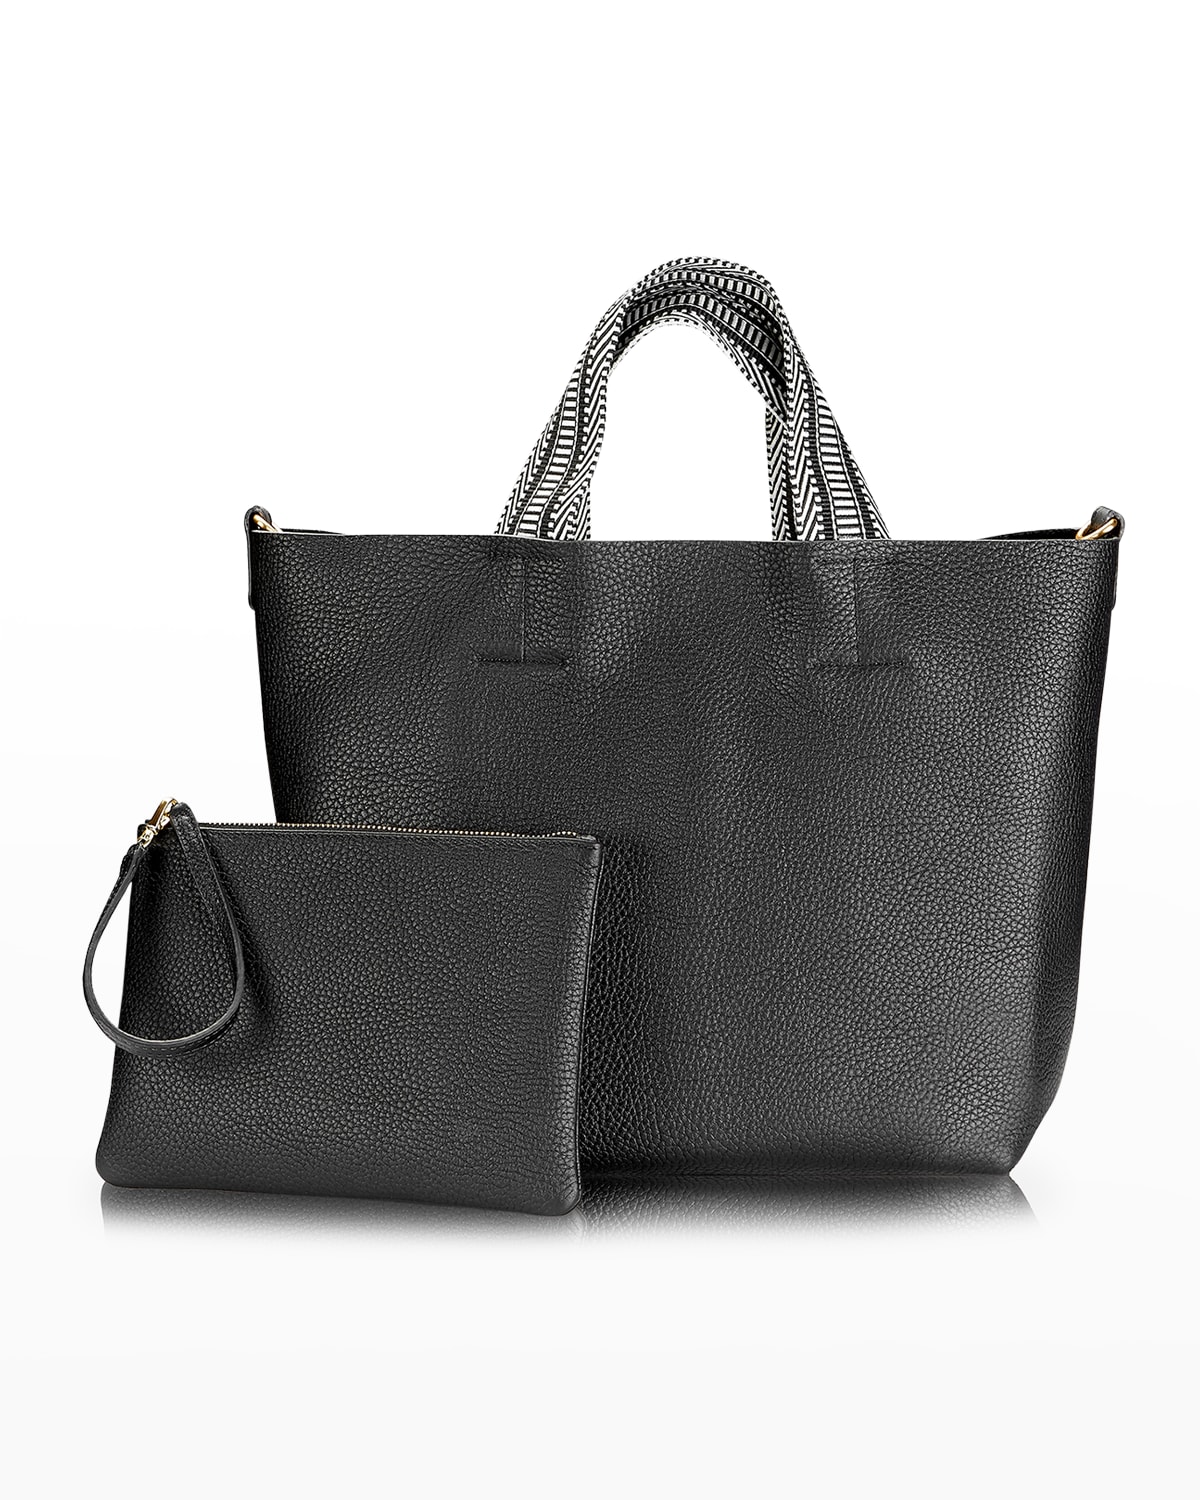 Gigi New York Leigh Pebble Leather Tote Bag